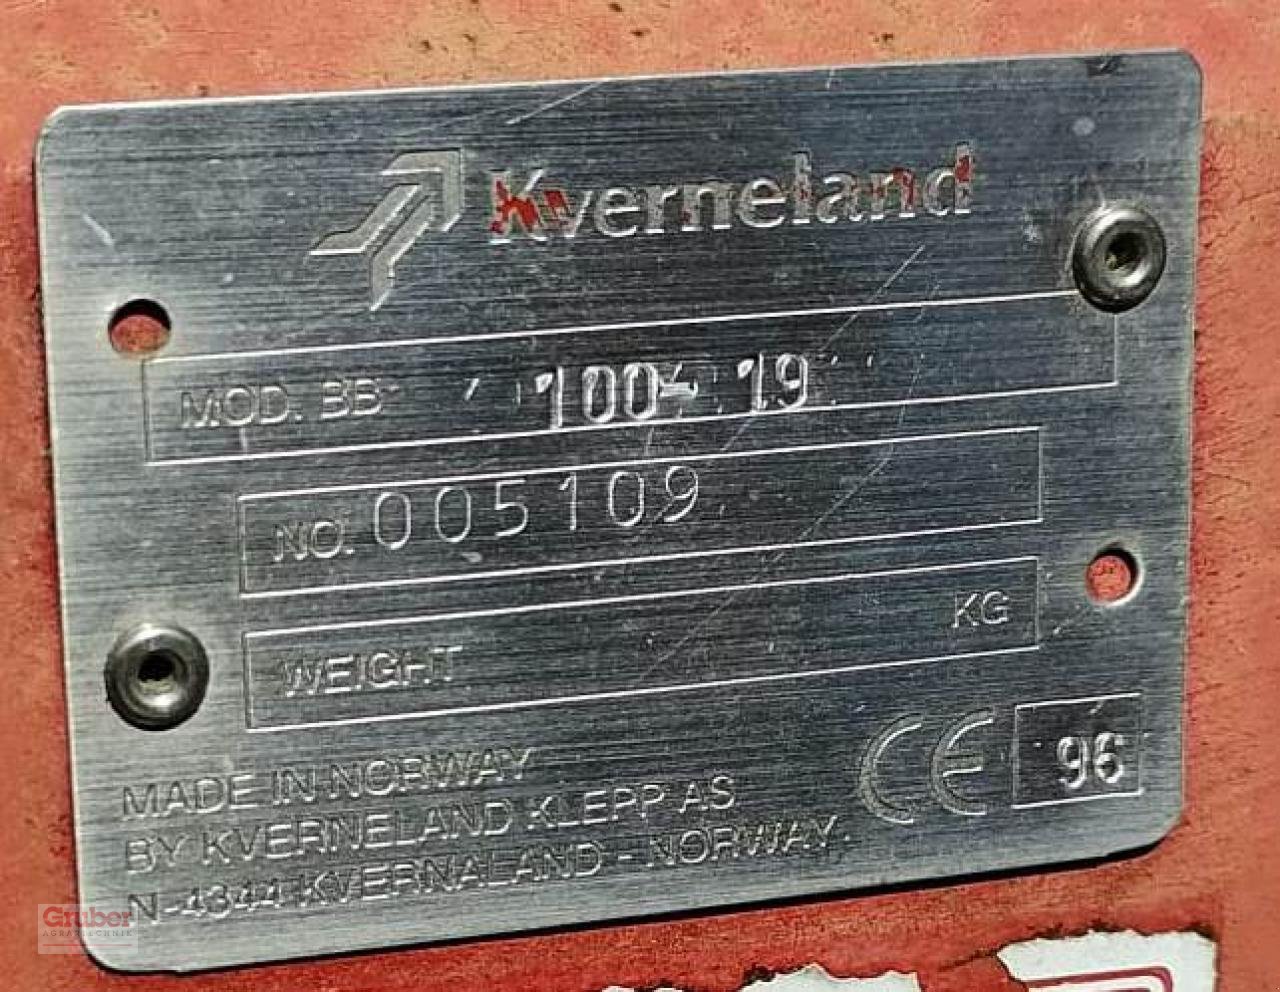 Pflug des Typs Kverneland BB 100 - 19 Variomat, Gebrauchtmaschine in Leipzig OT Engelsdorf (Bild 7)